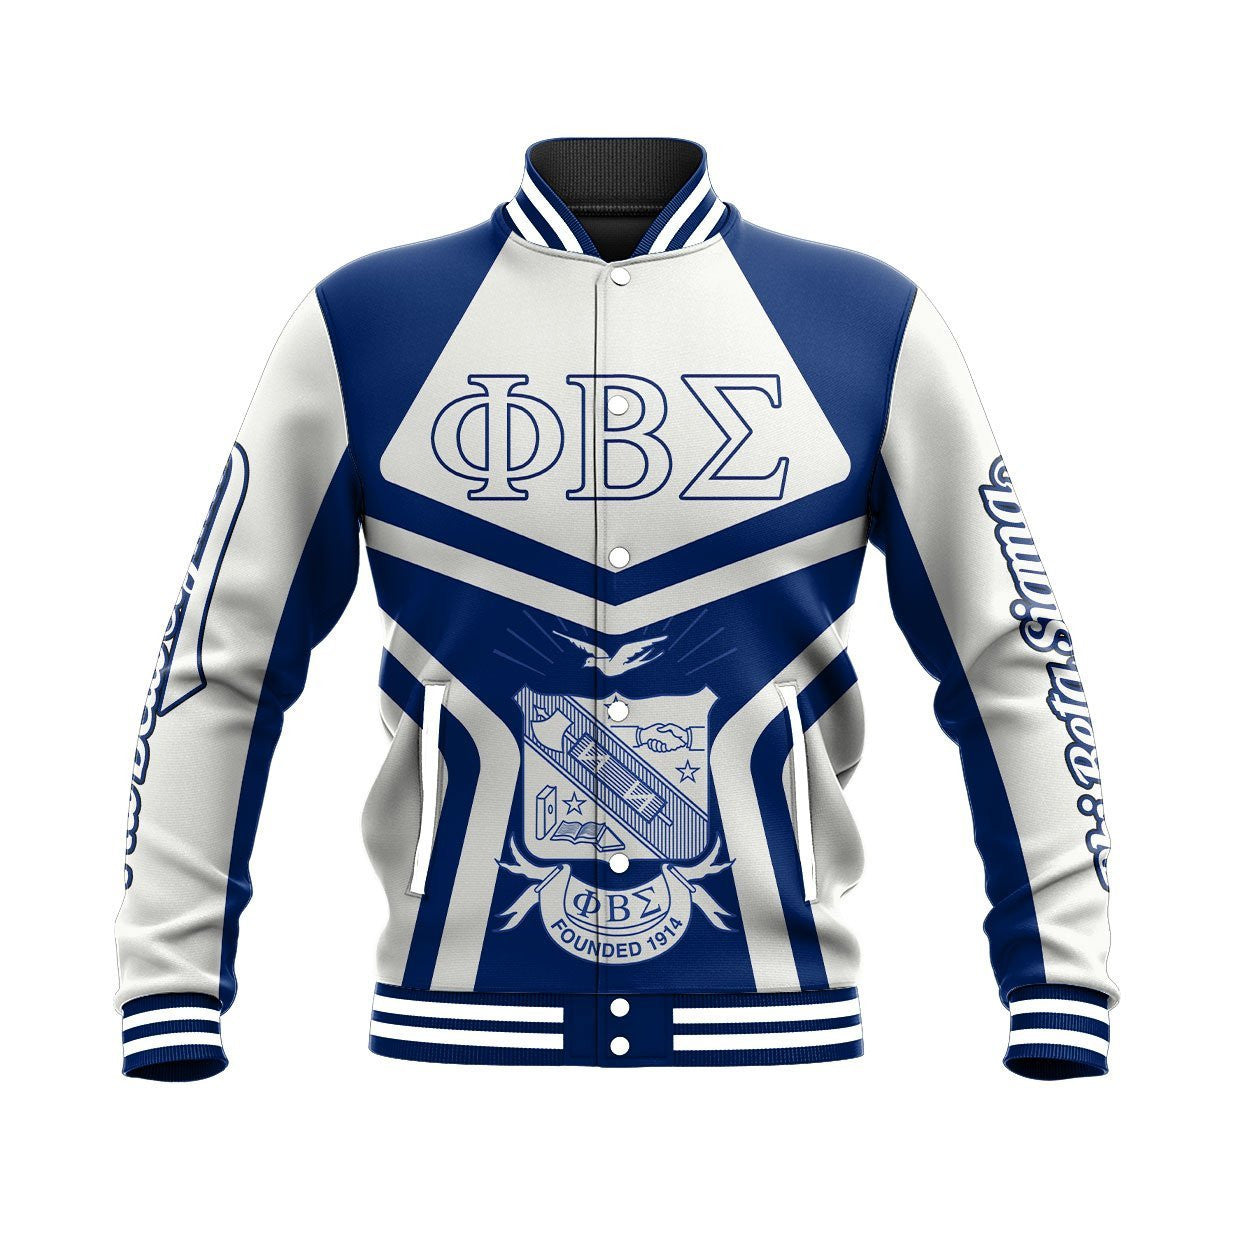 Fraternity Jacket - Phi Beta Sigma - My Style Baseball Jacket